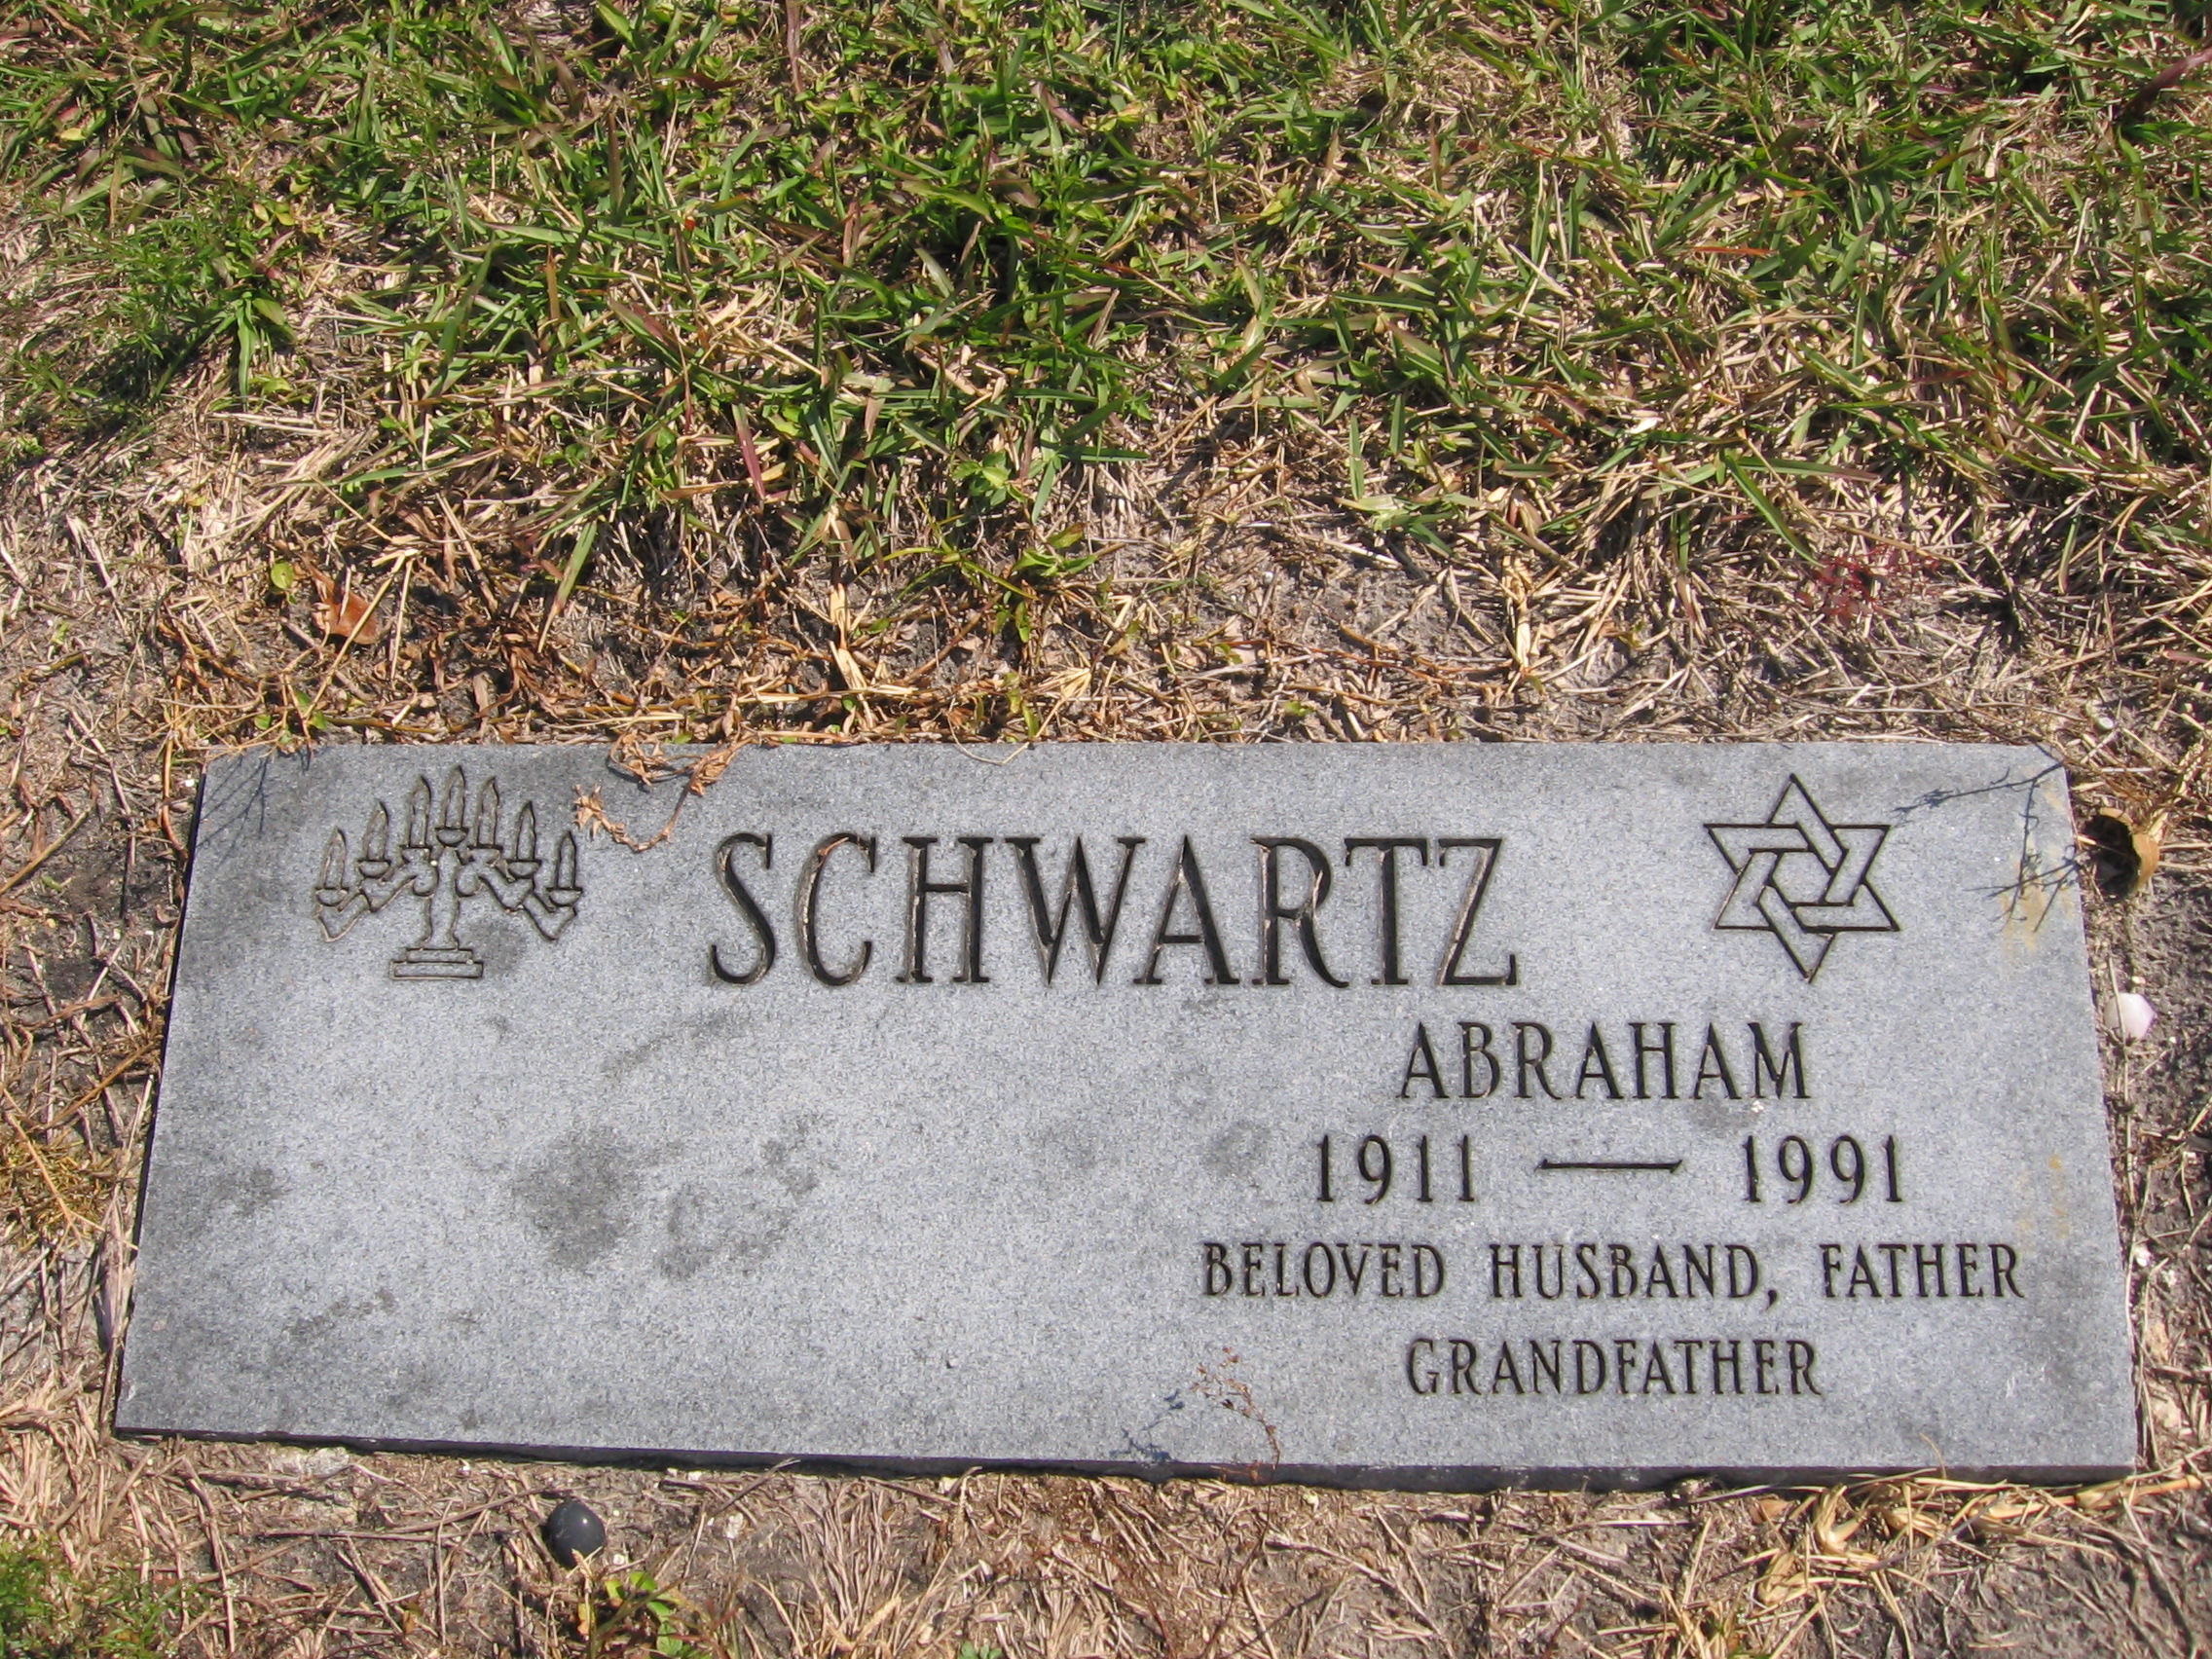 Abraham Schwartz